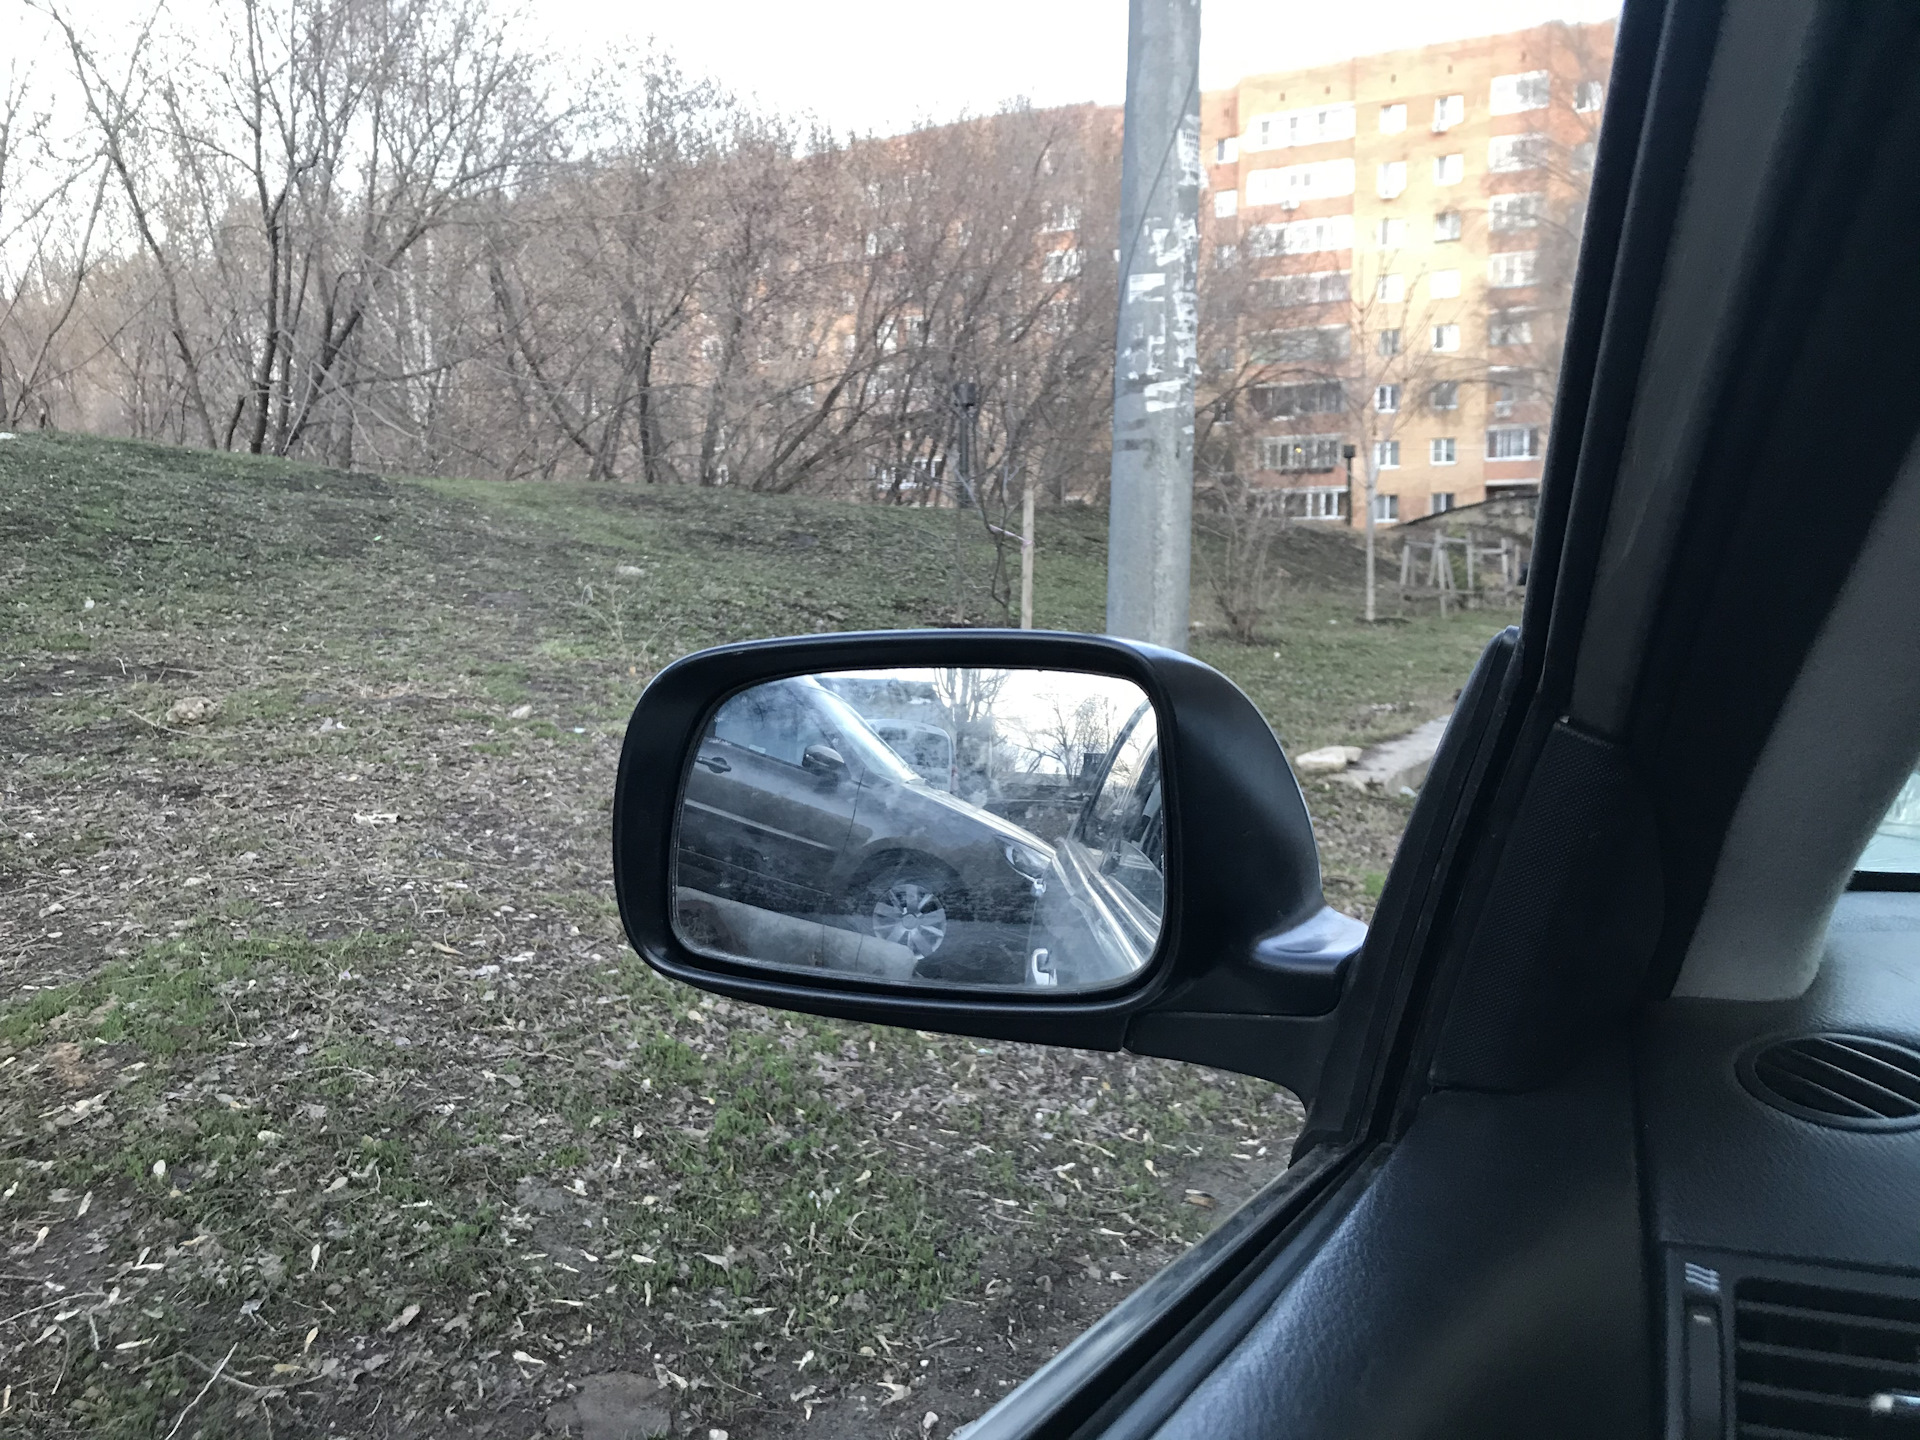 Водительское зеркало купить. Зеркало Toyota Corolla 120. Зеркального элемента зеркала Королла 120. Водительское зеркало в салоне. Зеркало Toyota Corolla 120 заднее.